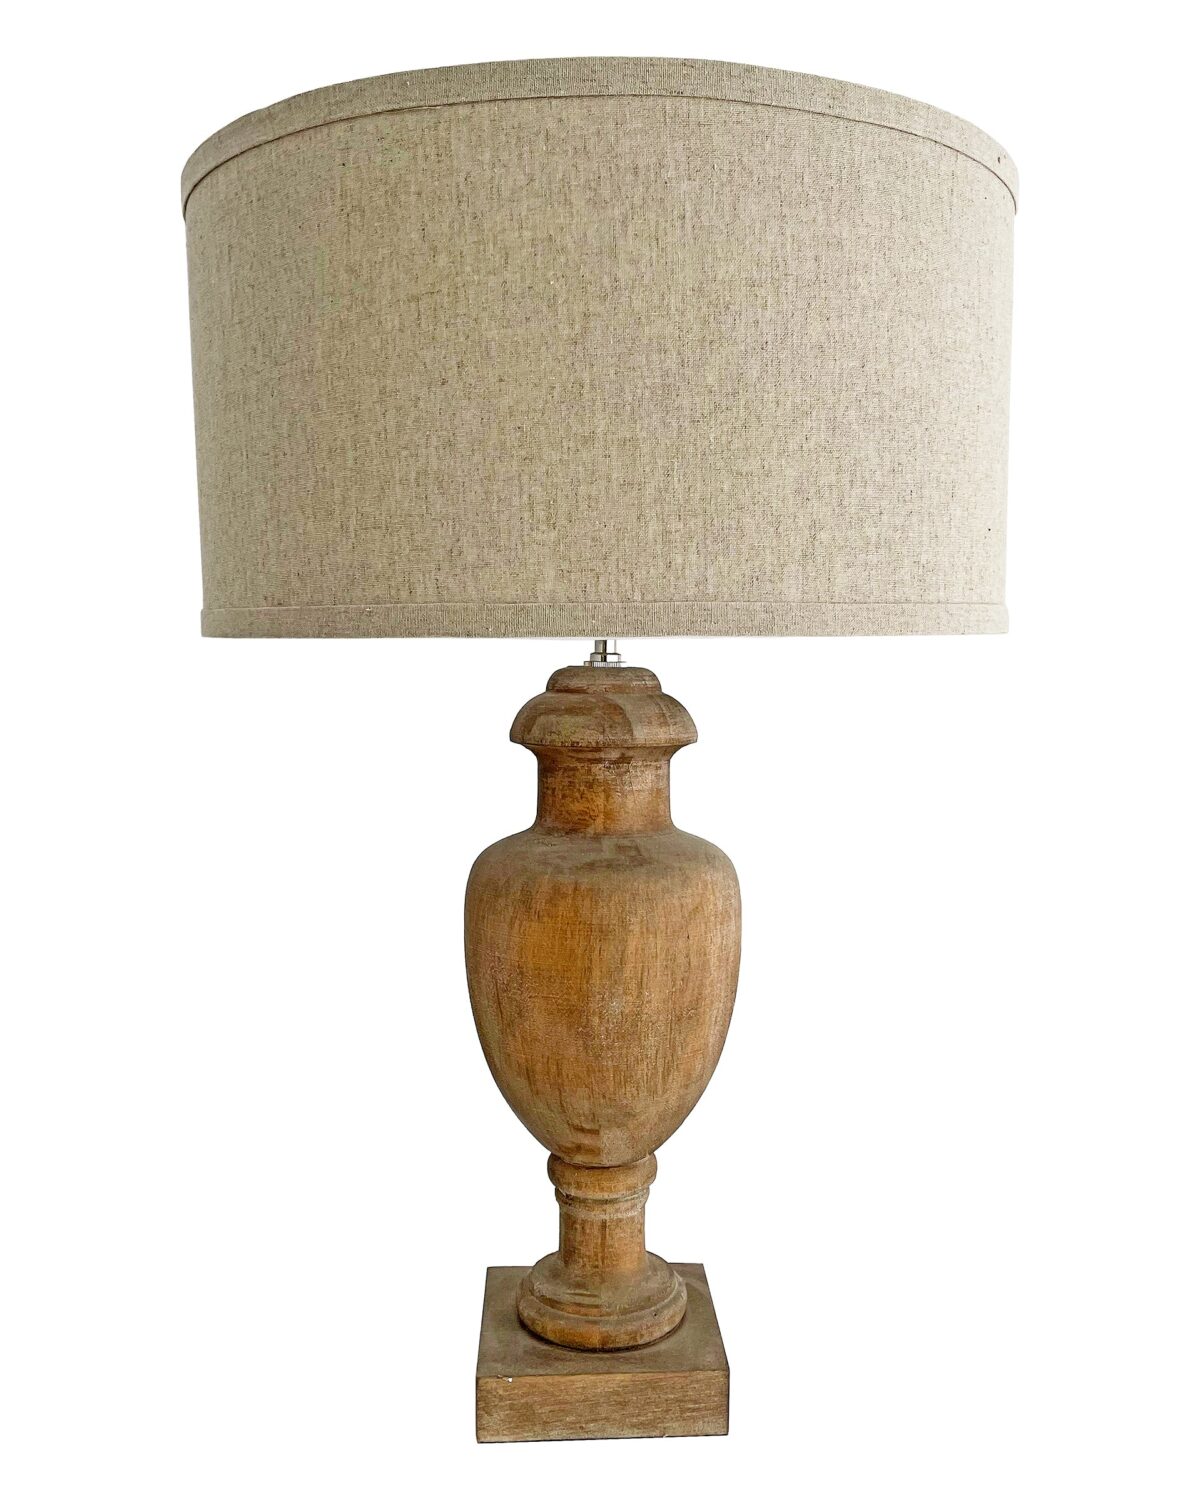 Рустикальная настольная лампа "Кенсингтон" с деревянным основанием